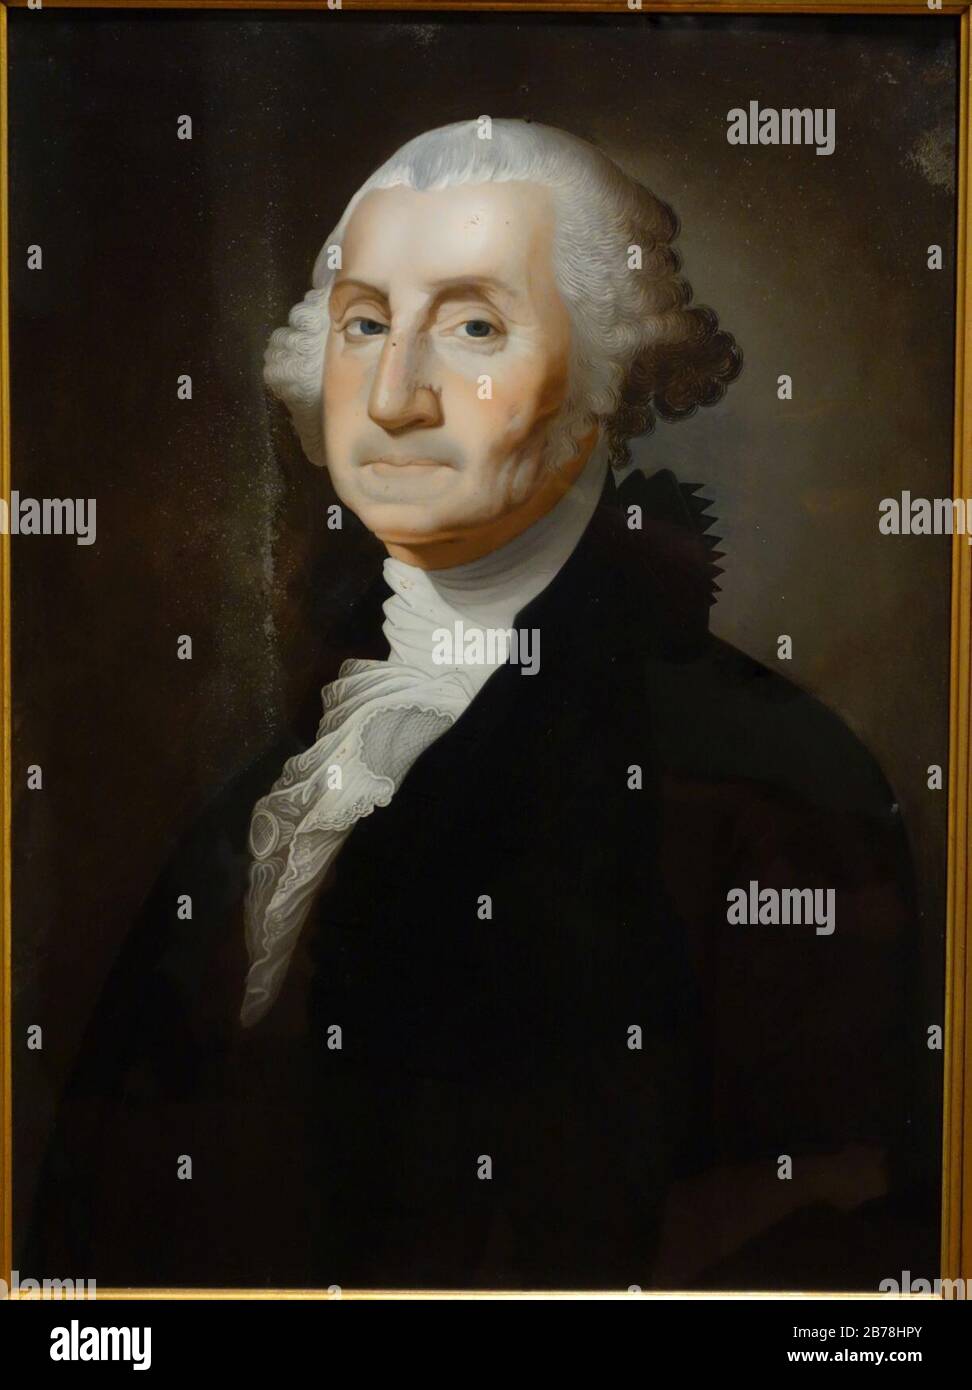 George Washington, attribué à Foeiqua (chinois), c. 1800-1805, peinture inversée sur verre Banque D'Images